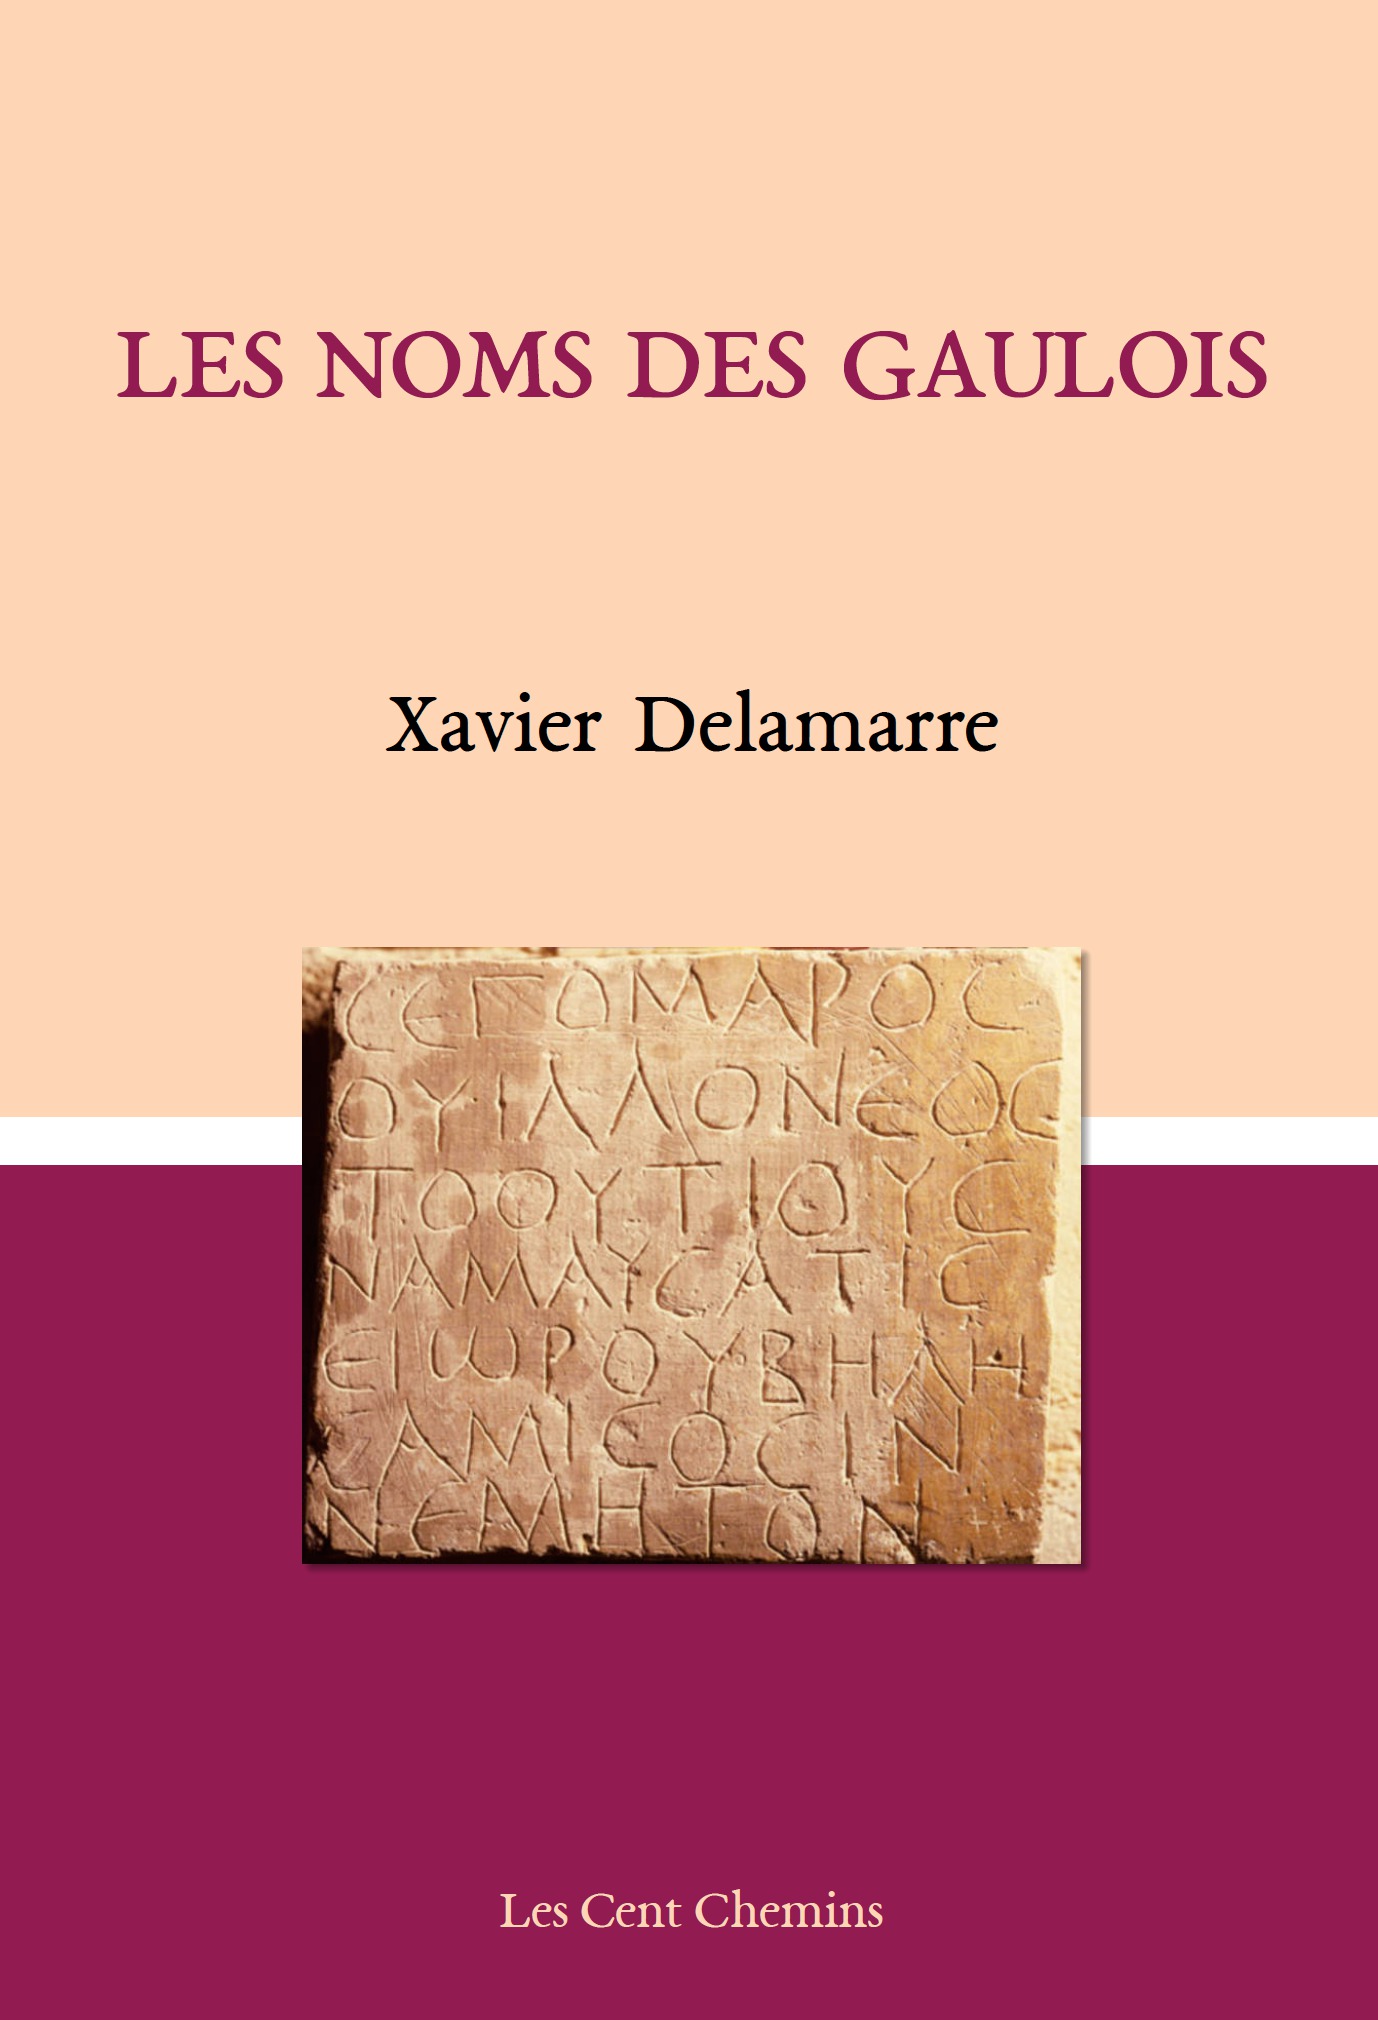 Les noms gaulois, 2017, 412 p.